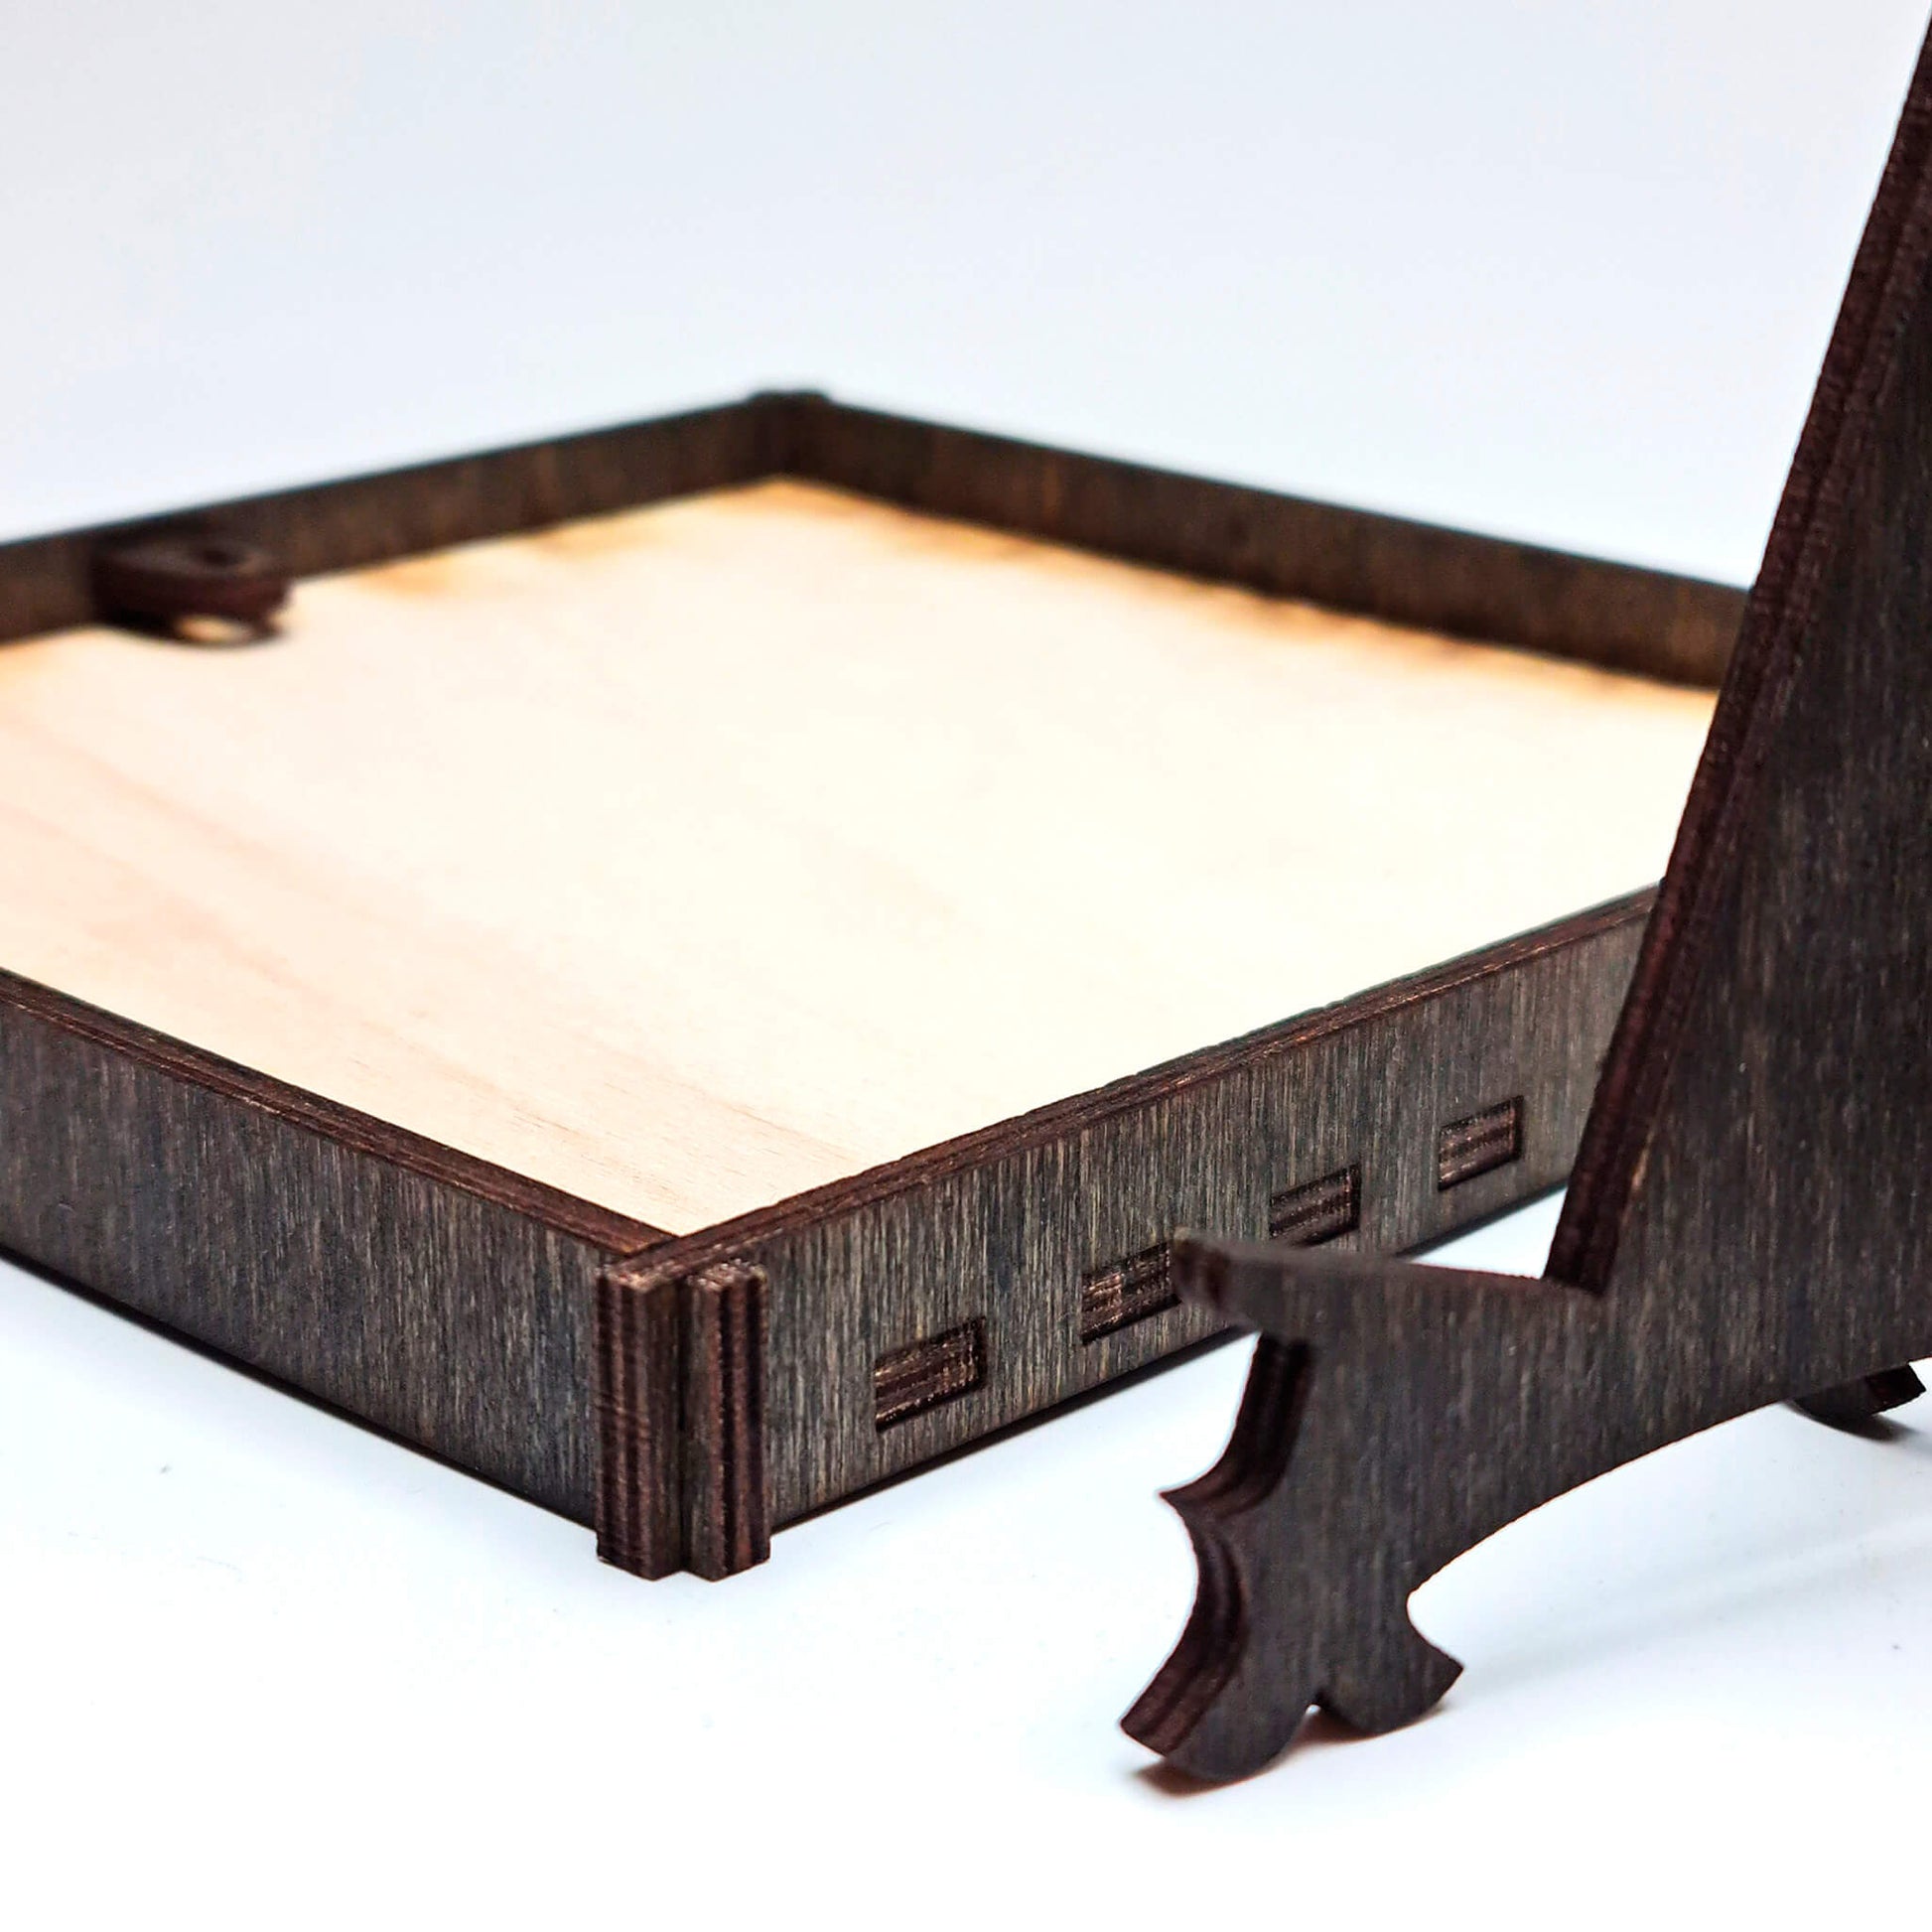 Foto auf Holz gedruckt, mit edlem Rahmen und Ständer, Quadratisch, 3 Größen - Nanino Design Onlineshop -